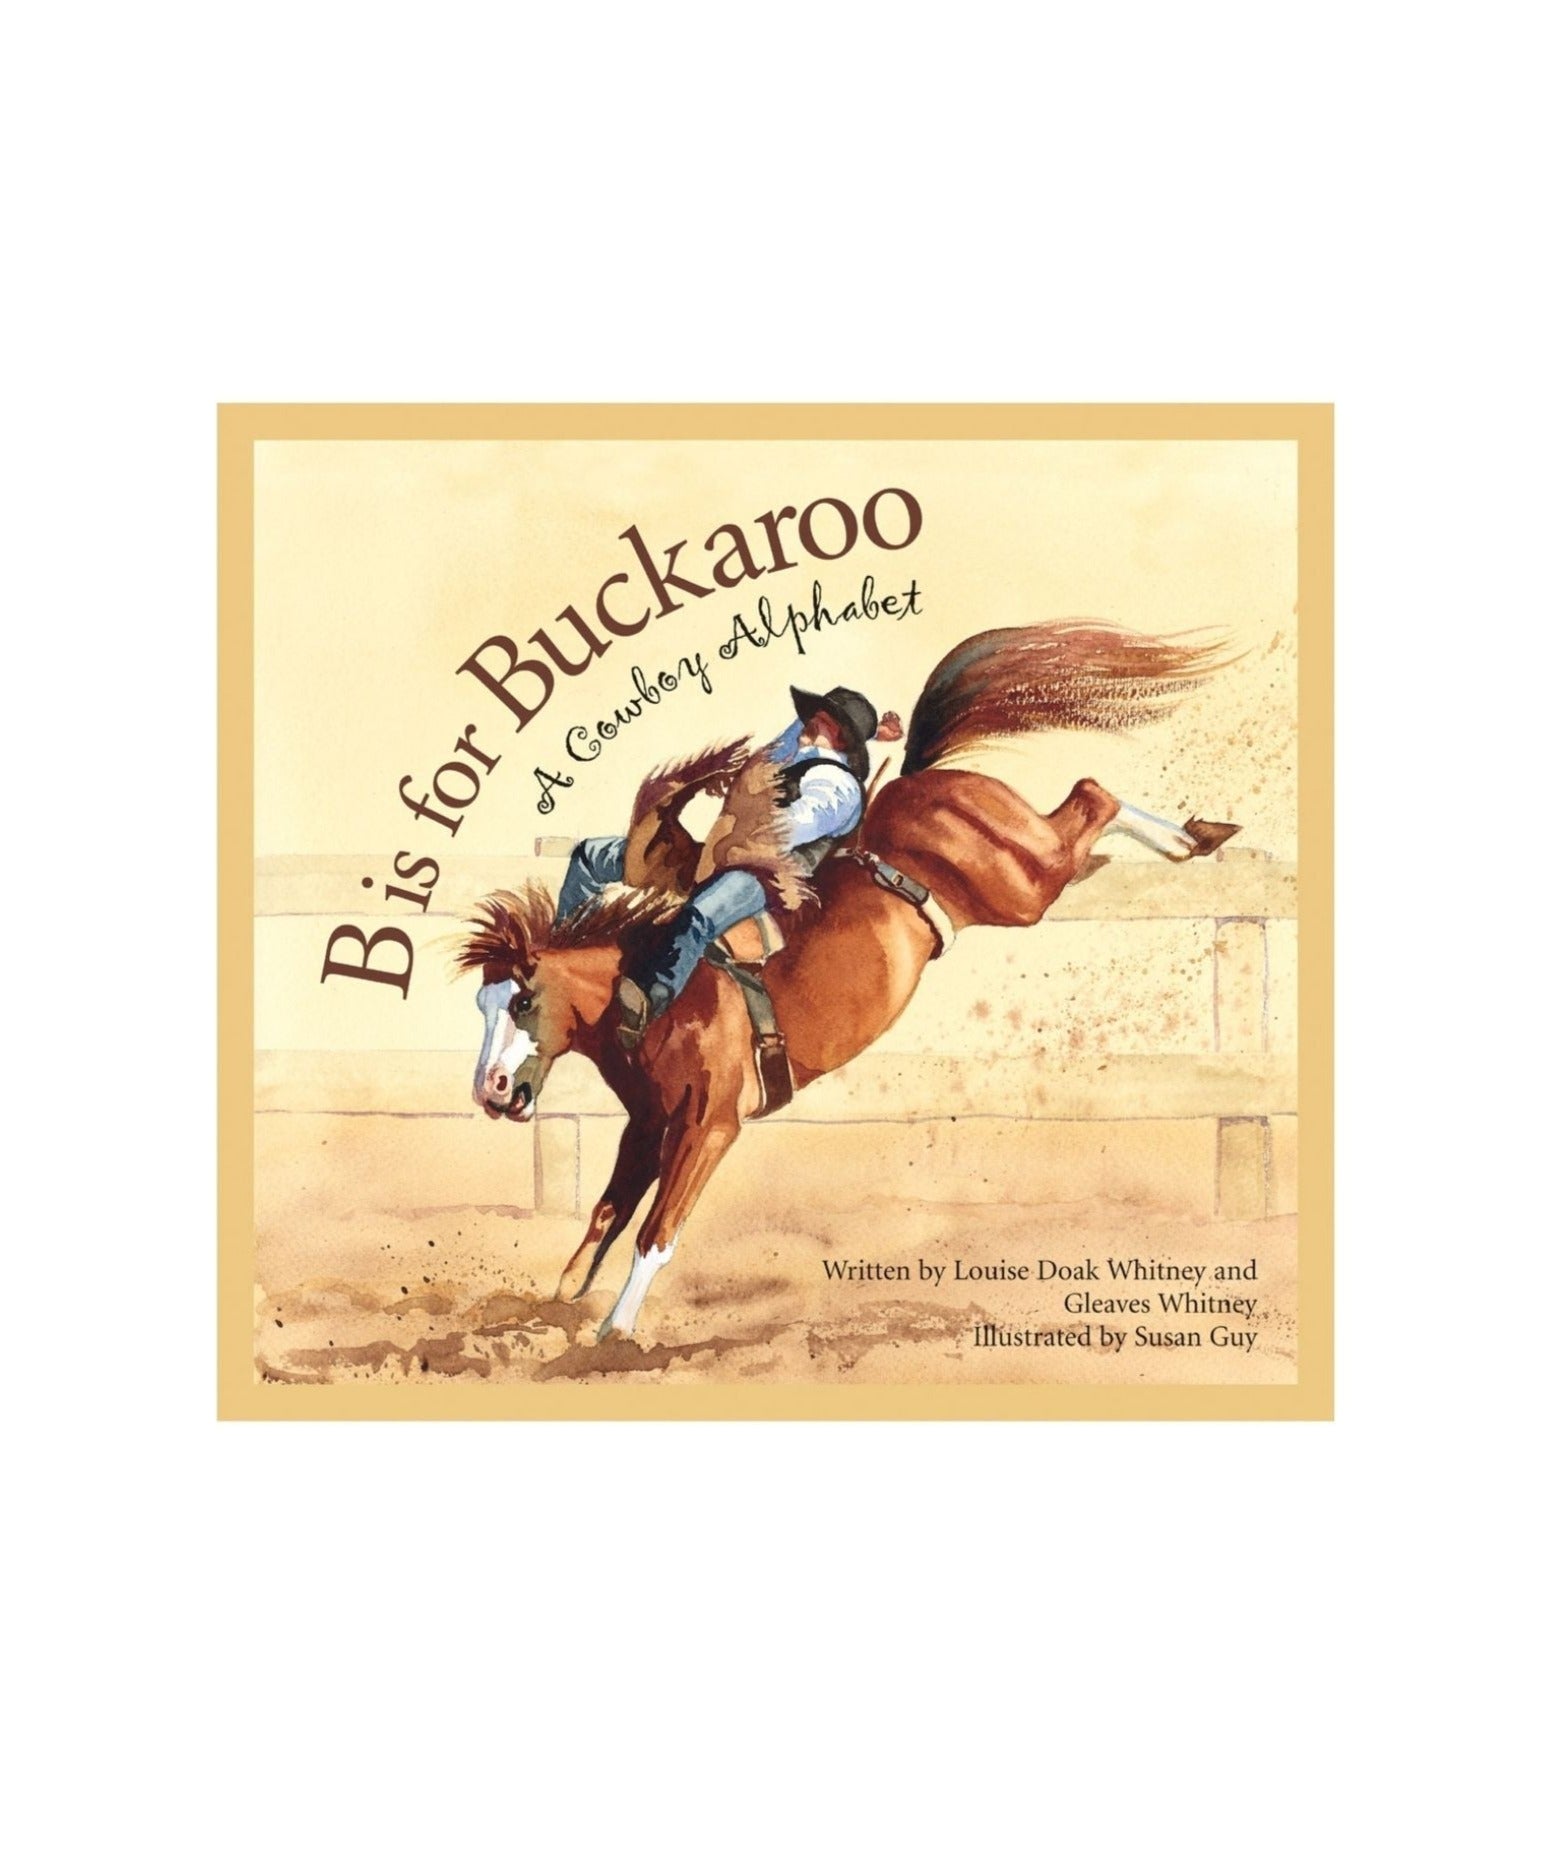 b is for buckaroo book cover. Shows a cowboy riding a horse.